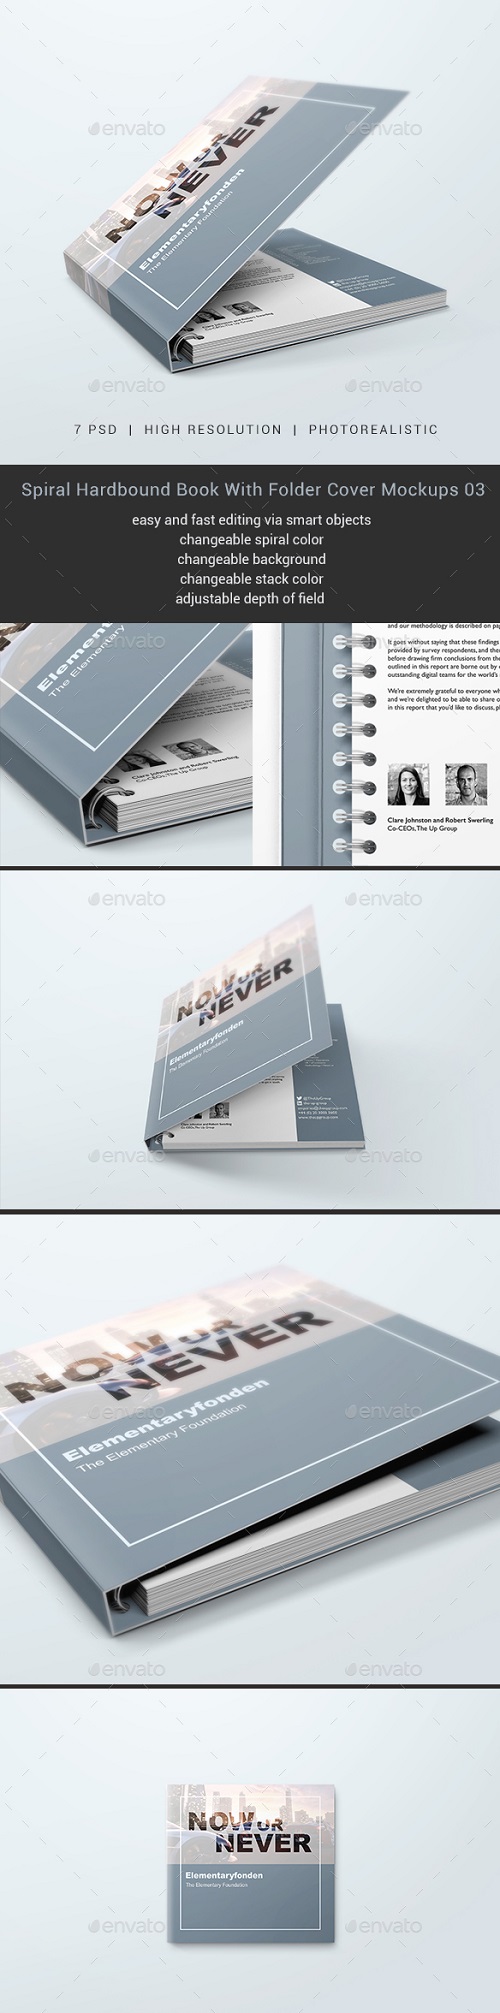 Spiral Hardbound Book With Folder Cover Mockups 03 20628864